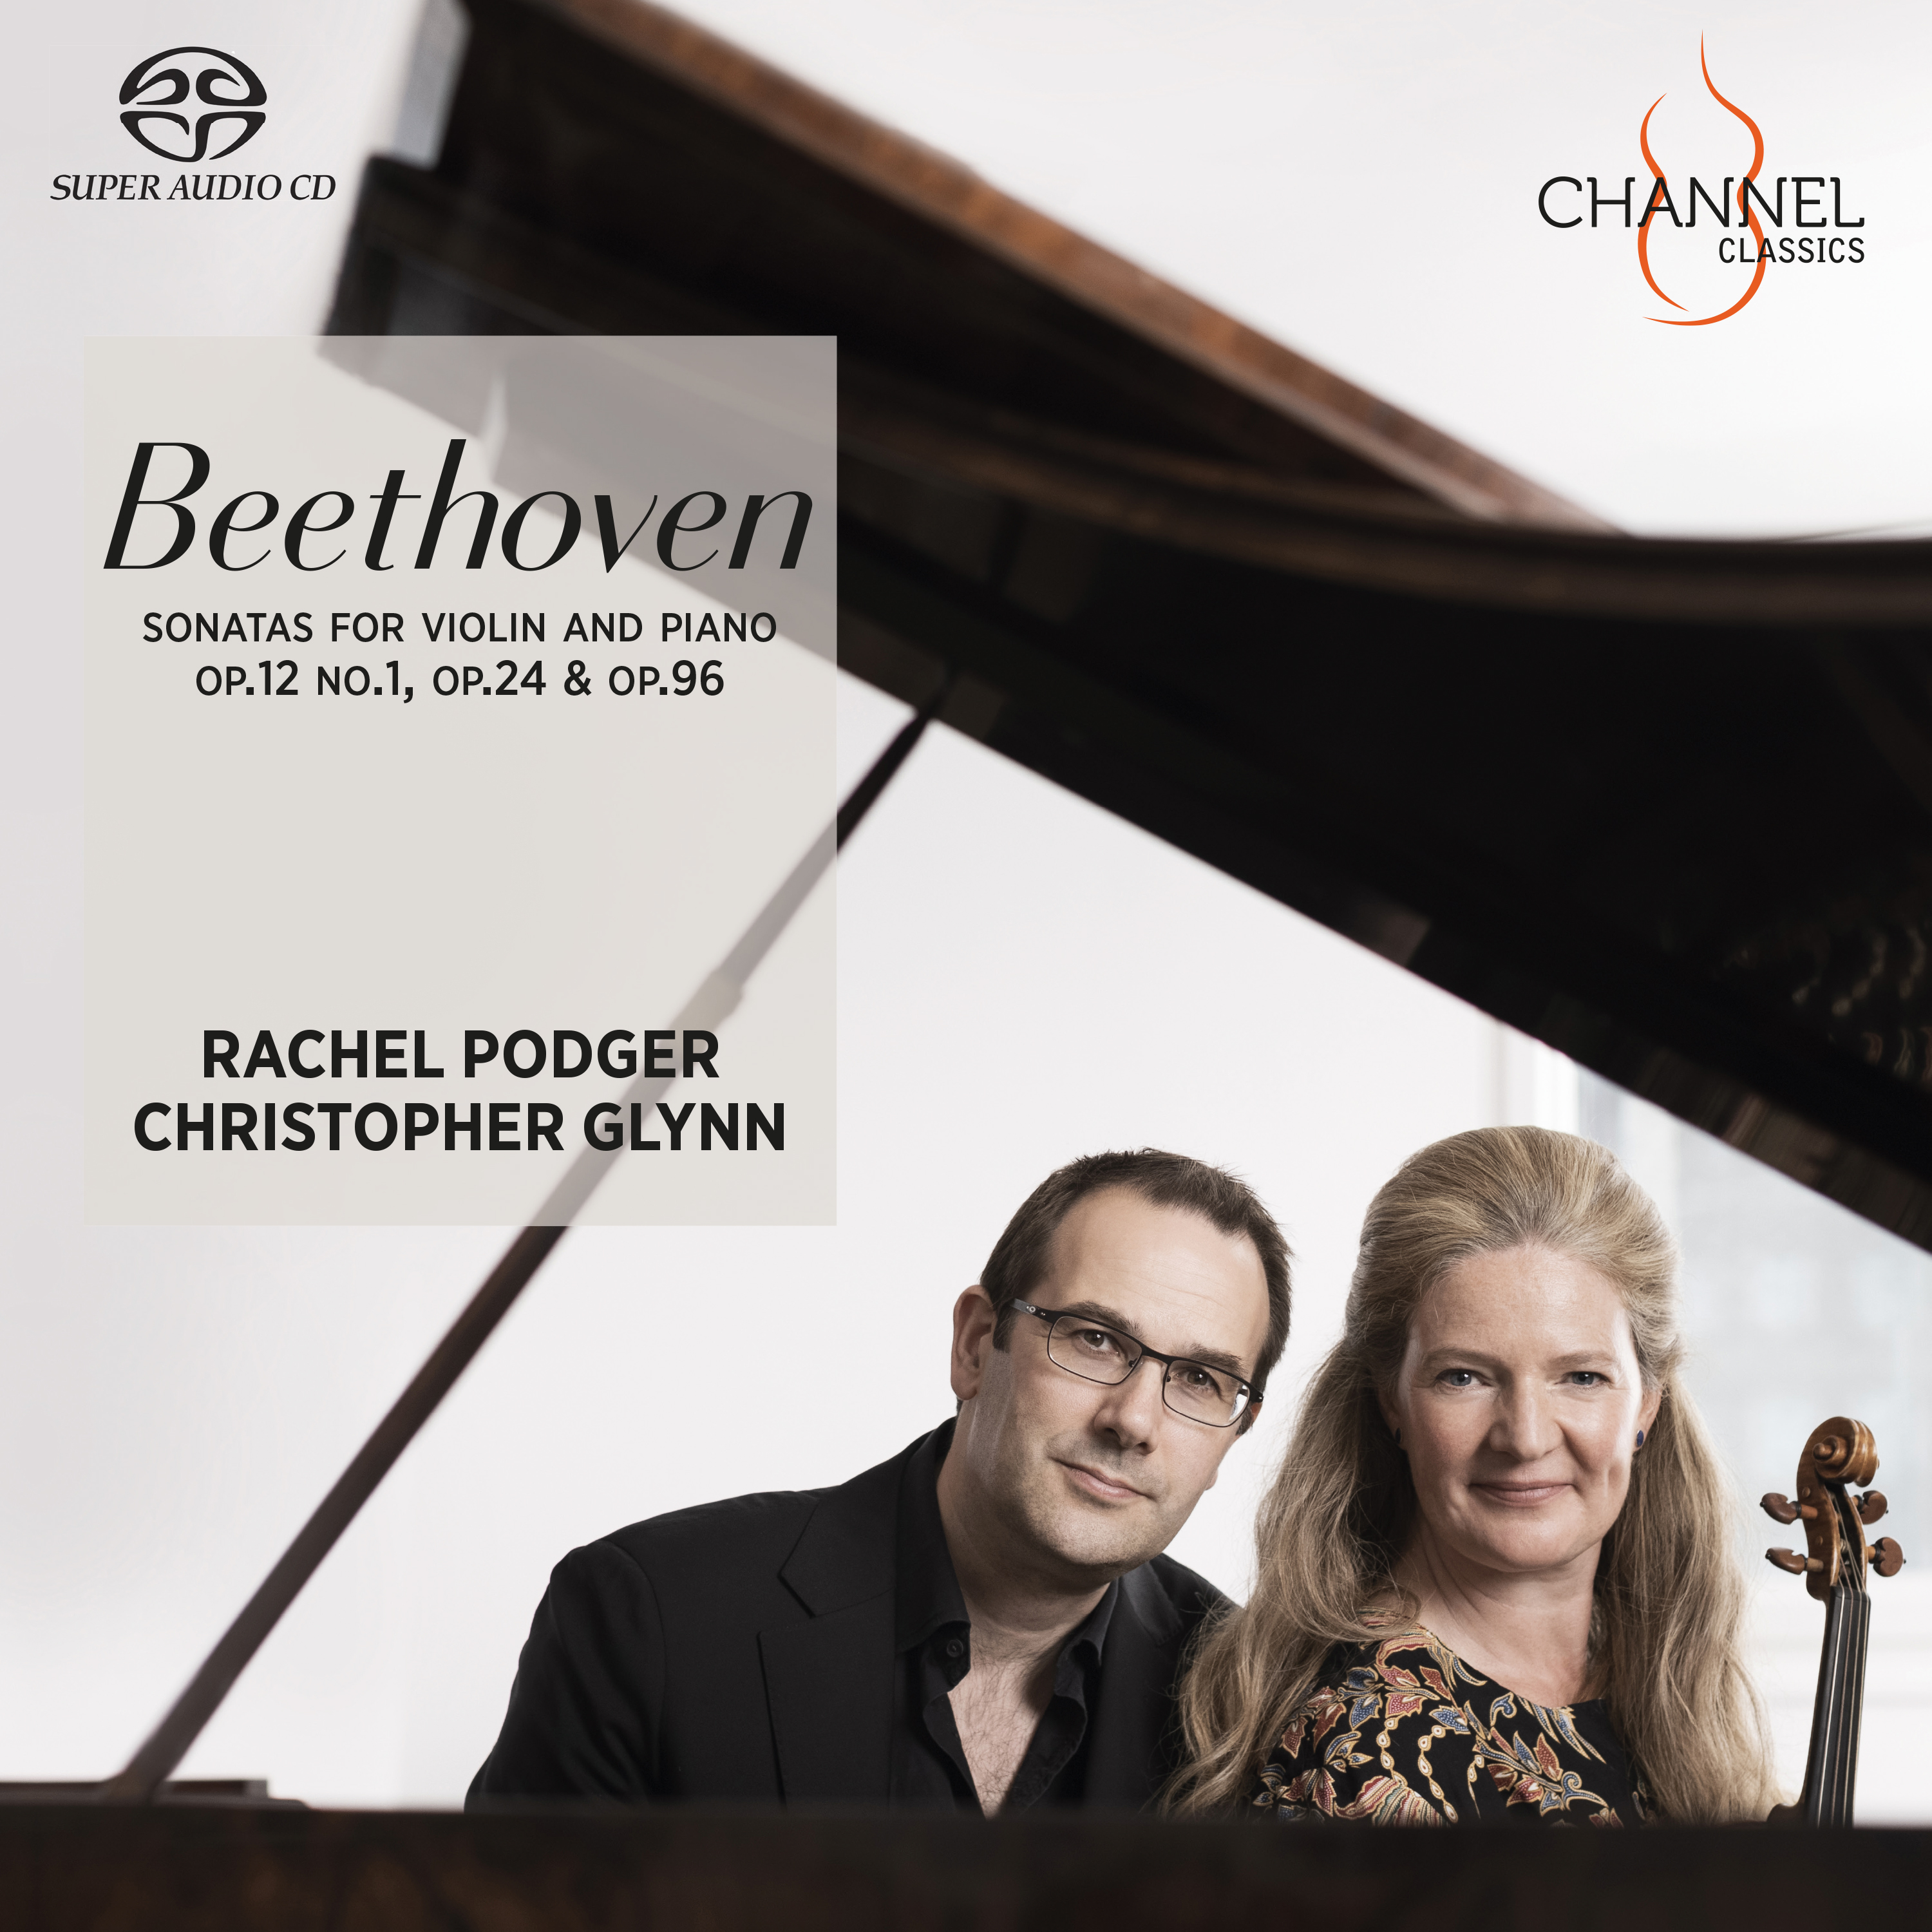 Beethoven: Sonatas for piano and violin op 24 no. 1, no. 5, no. 10 - Rachel Podger